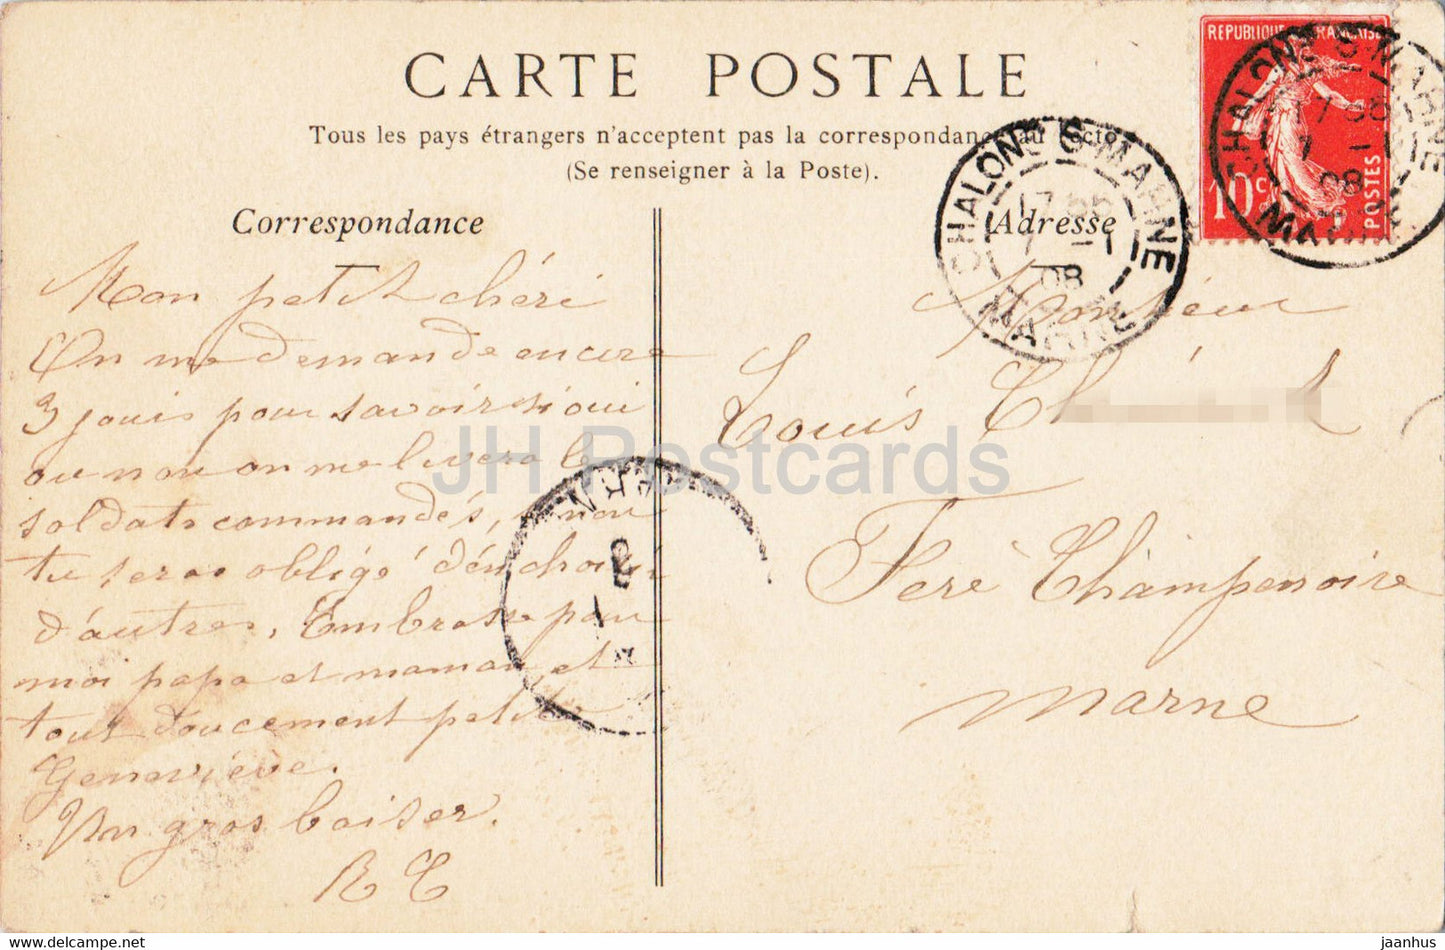 Chalons sur Marne - La Place de la République et la Fontaine - 62 - carte postale ancienne - 1908 - France - oblitéré